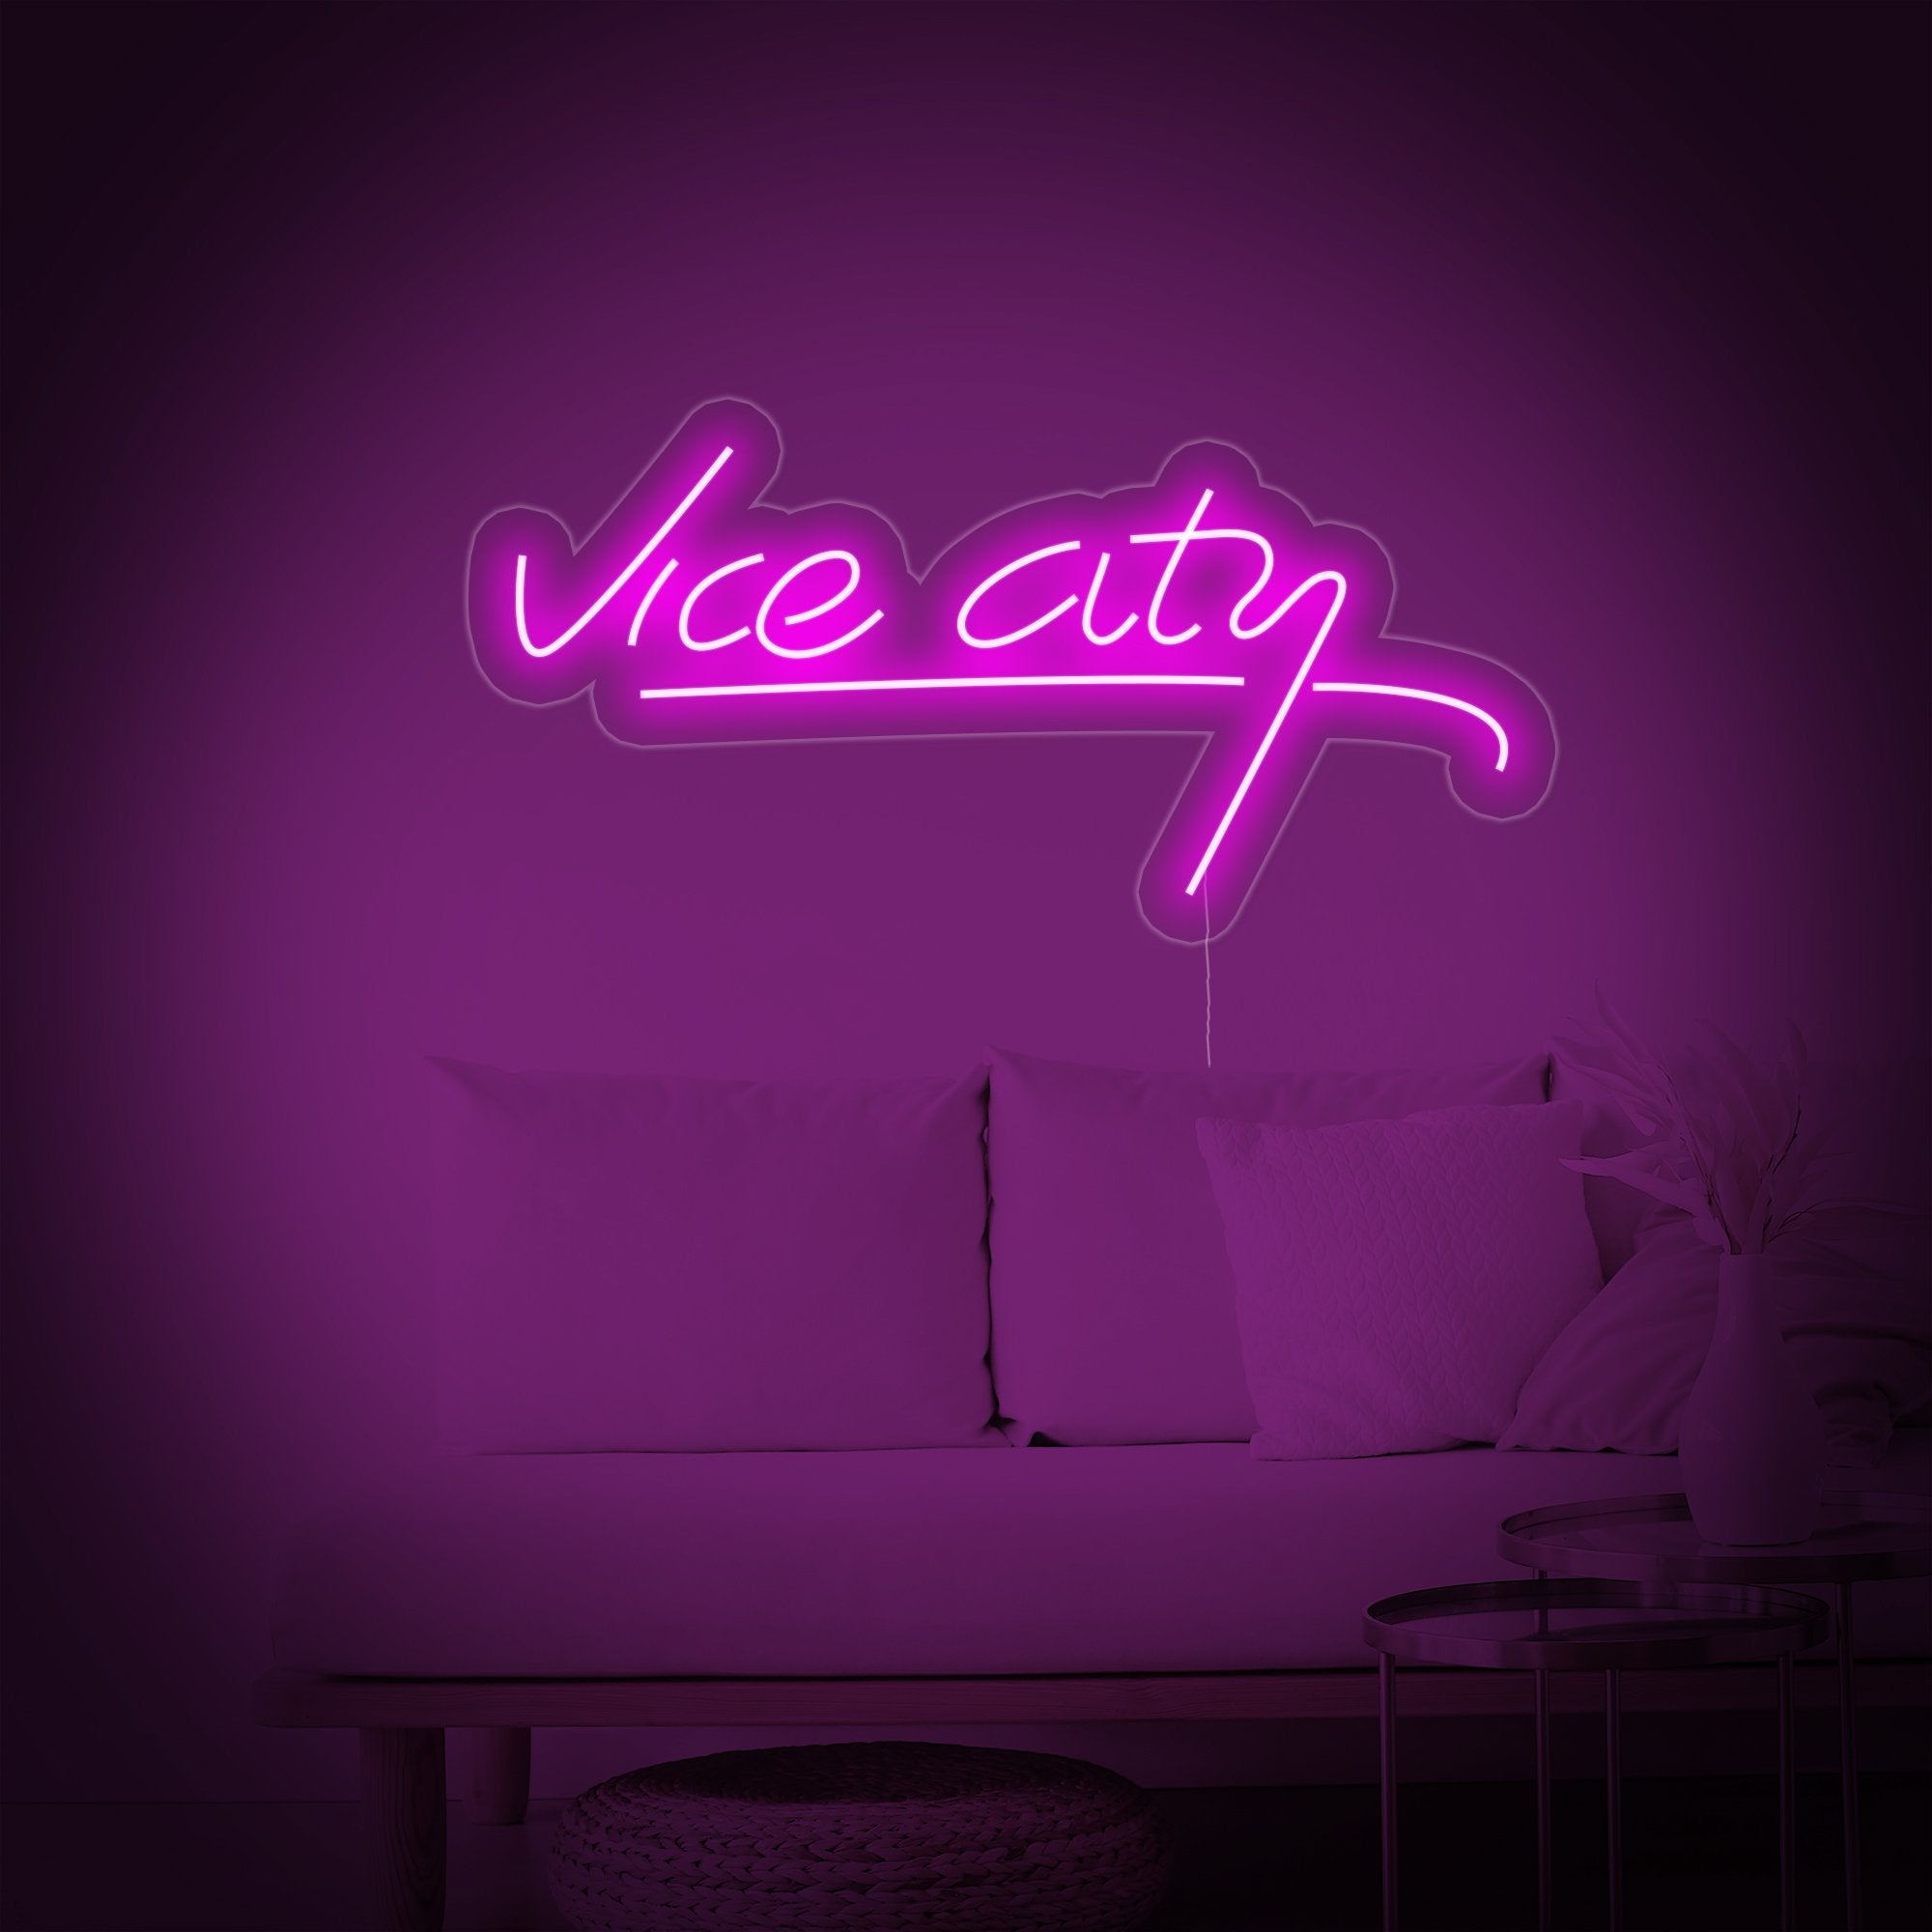 Vice City Neon 